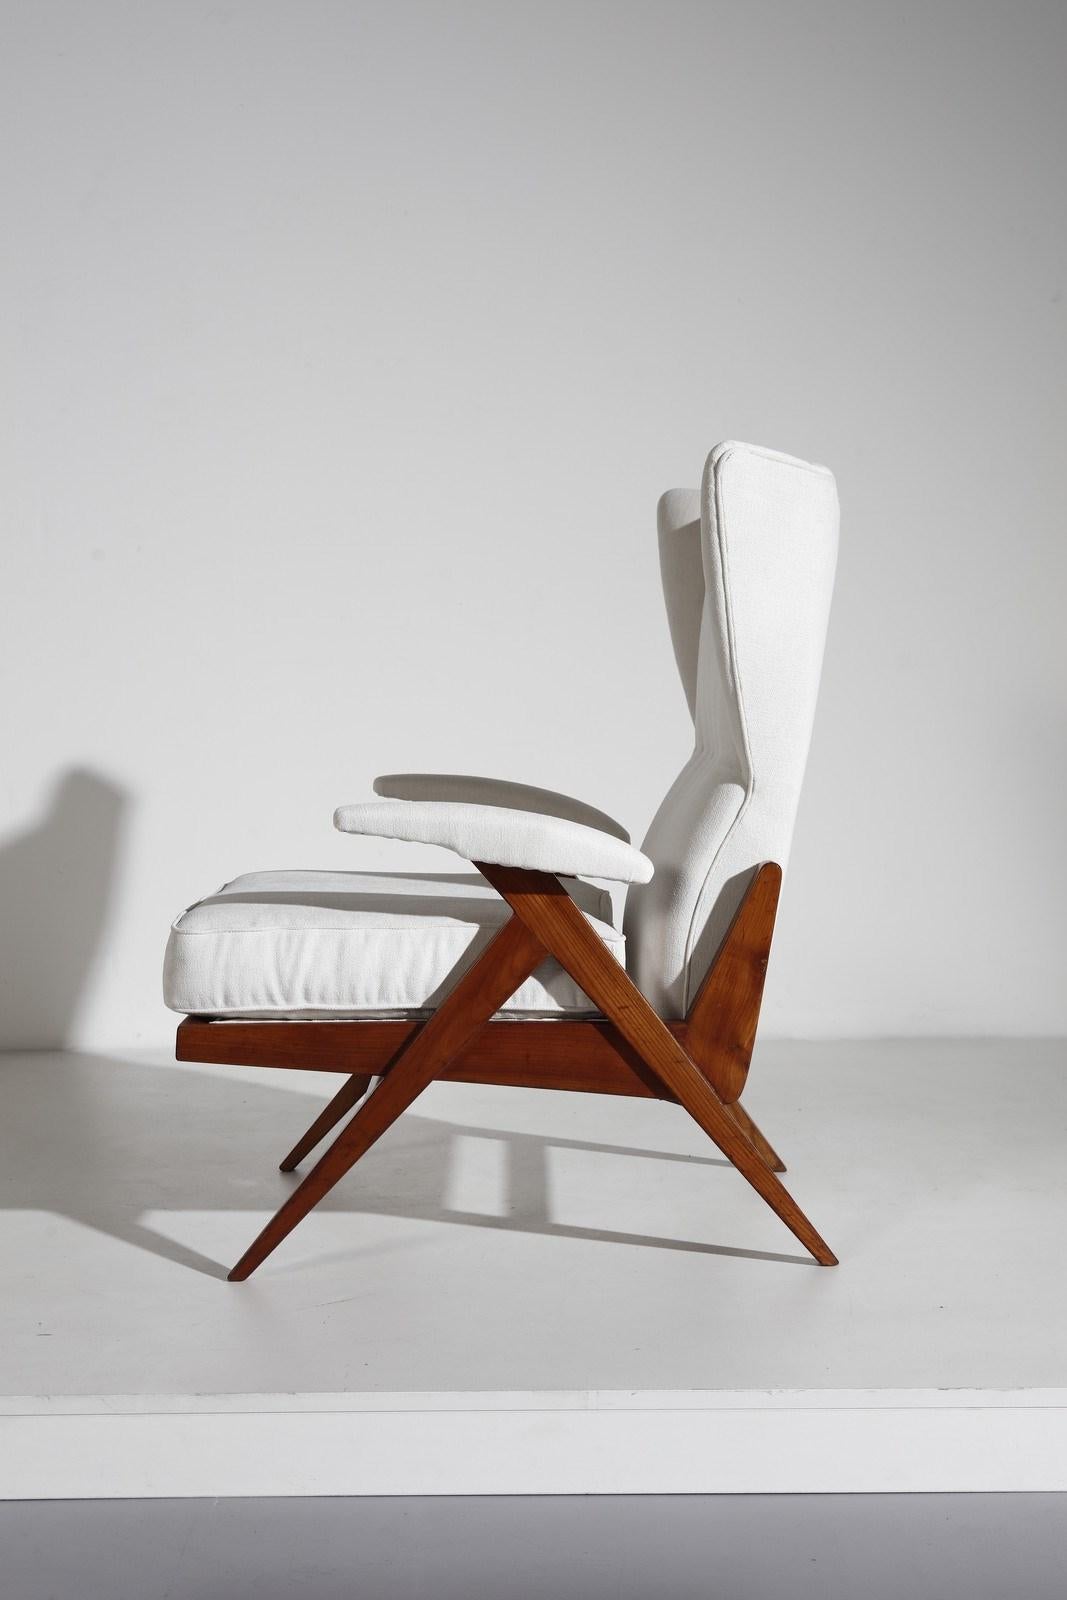 Flügellehnsessel aus der Mitte des Jahrhunderts, Renzo Franchi, 1950er Jahre, Italien

Loungesessel mit Gestell aus Kirschbaumholz und Messingdetails. Diese Sessel sind in jeder ihrer 4 Positionen entspannend und bequem, ob aufrecht oder ganz